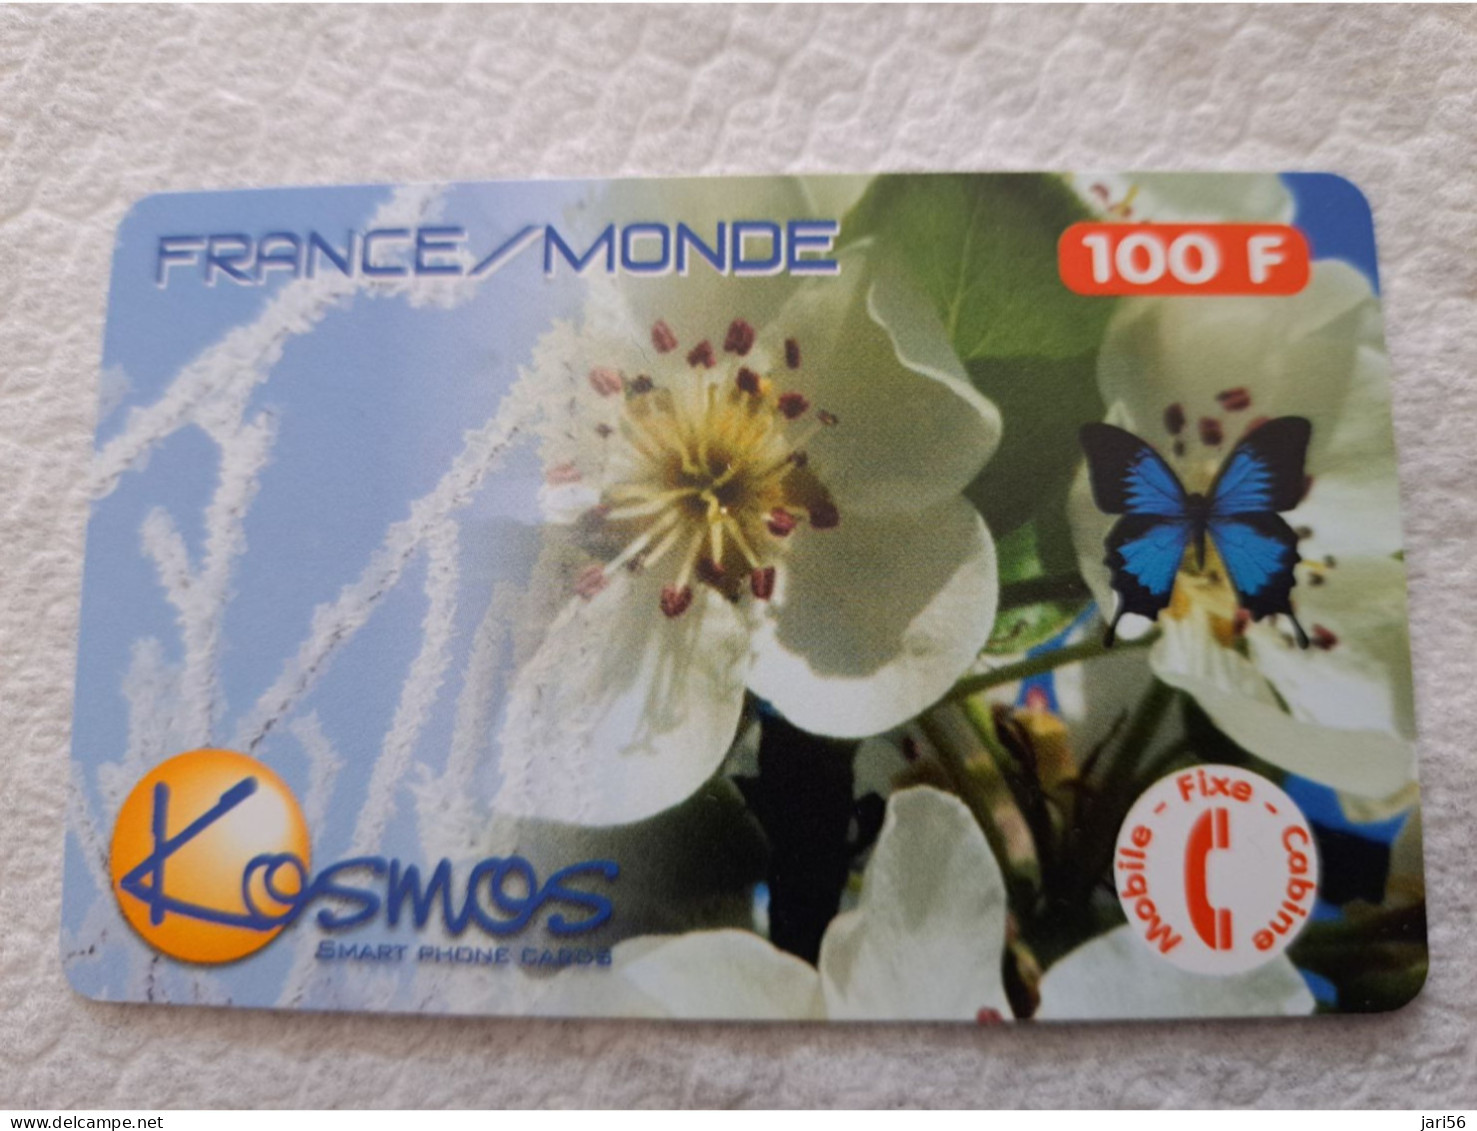 FRANCE/FRANKRIJK  100F// KOSMOS SMART/ FRANCE MONDE  /BUTTERFLY /FLOWER /   PREPAID  / USED   ** 14546** - Mobicartes (GSM/SIM)